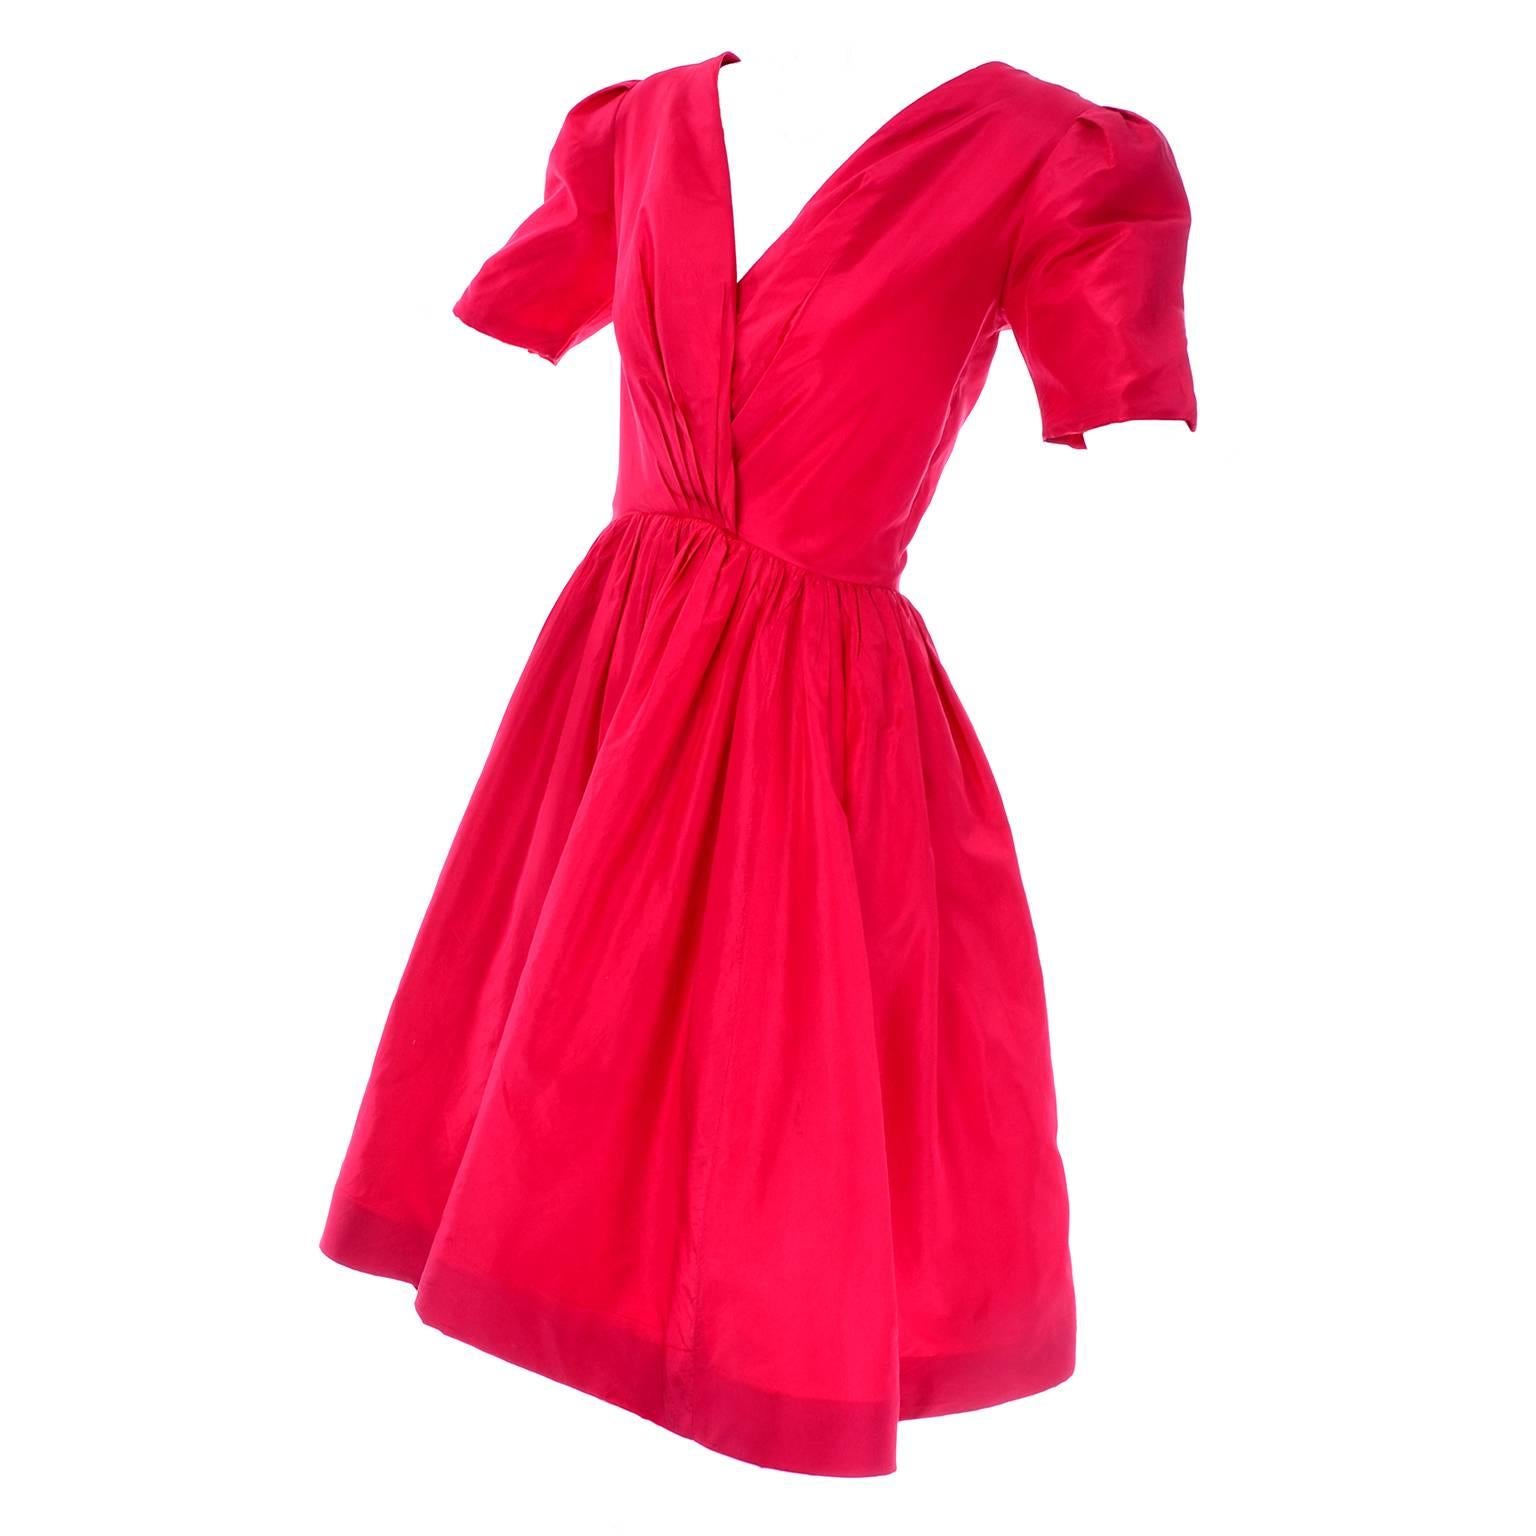 Oscar de la Renta Vintage Red Silk Party Dress from Bonwit Teller in Size 4/6